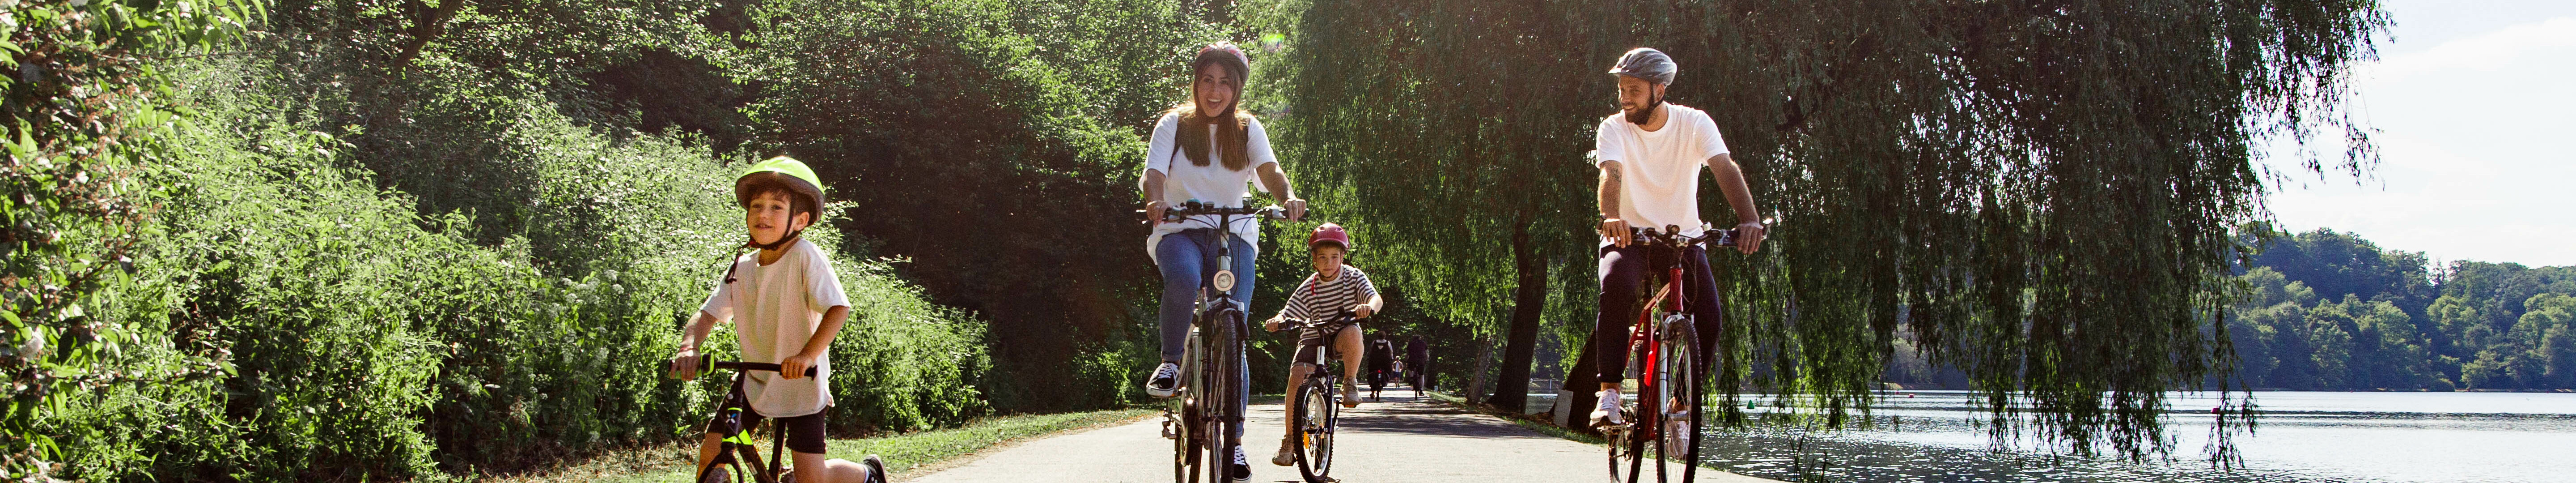 Familie fährt im Ruhrgebiet Fahrrad 